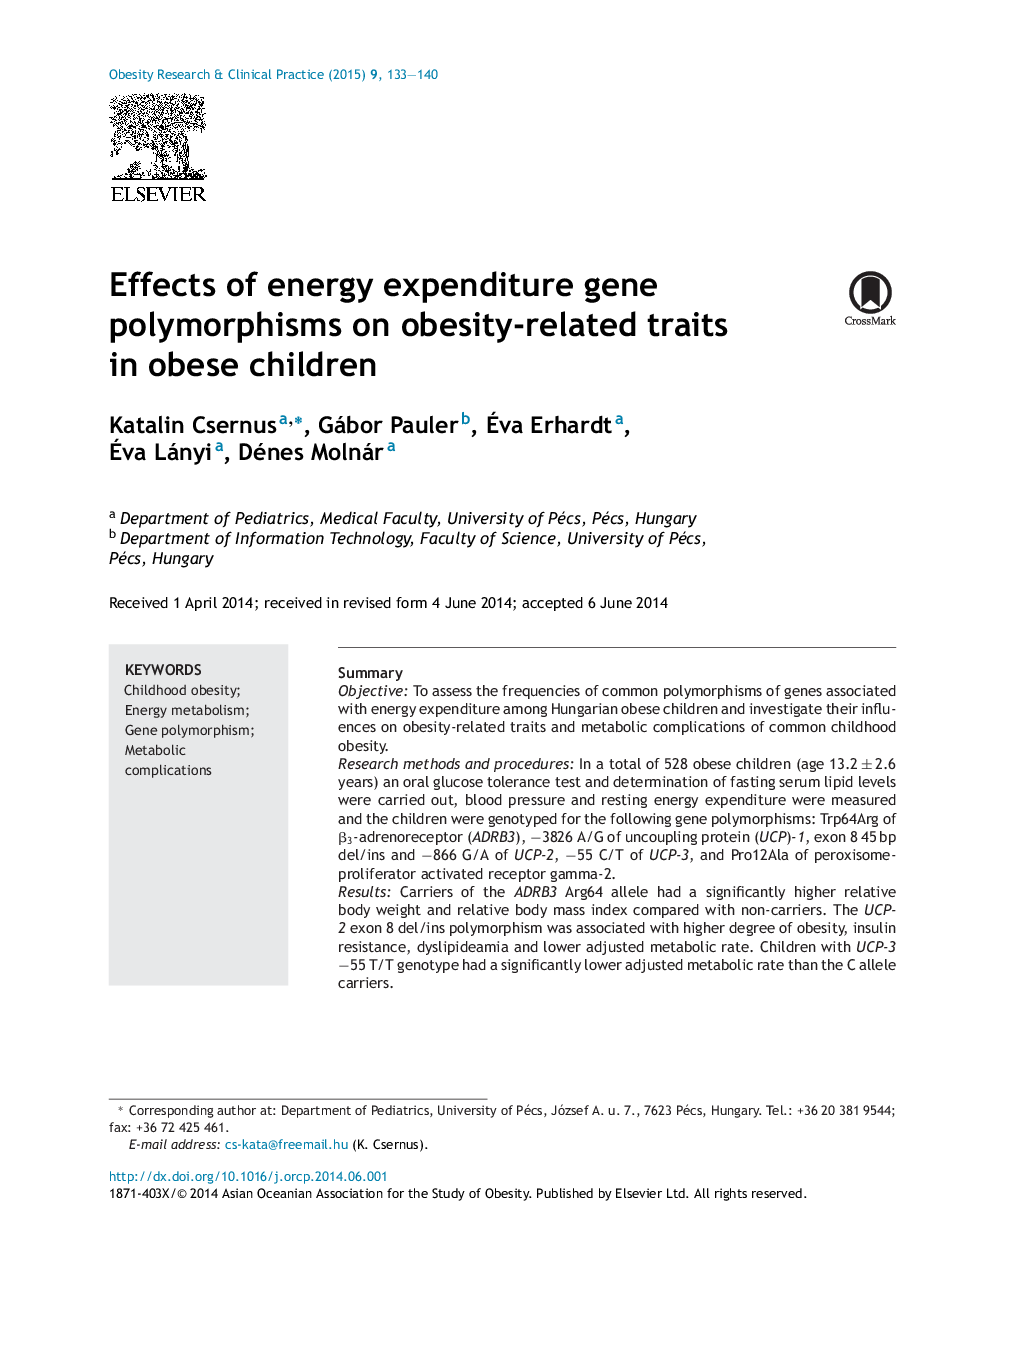 اثر پلی مورفیسم ژن مصرف انرژی بر ویژگی های مربوط به چاقی در کودکان چاق 